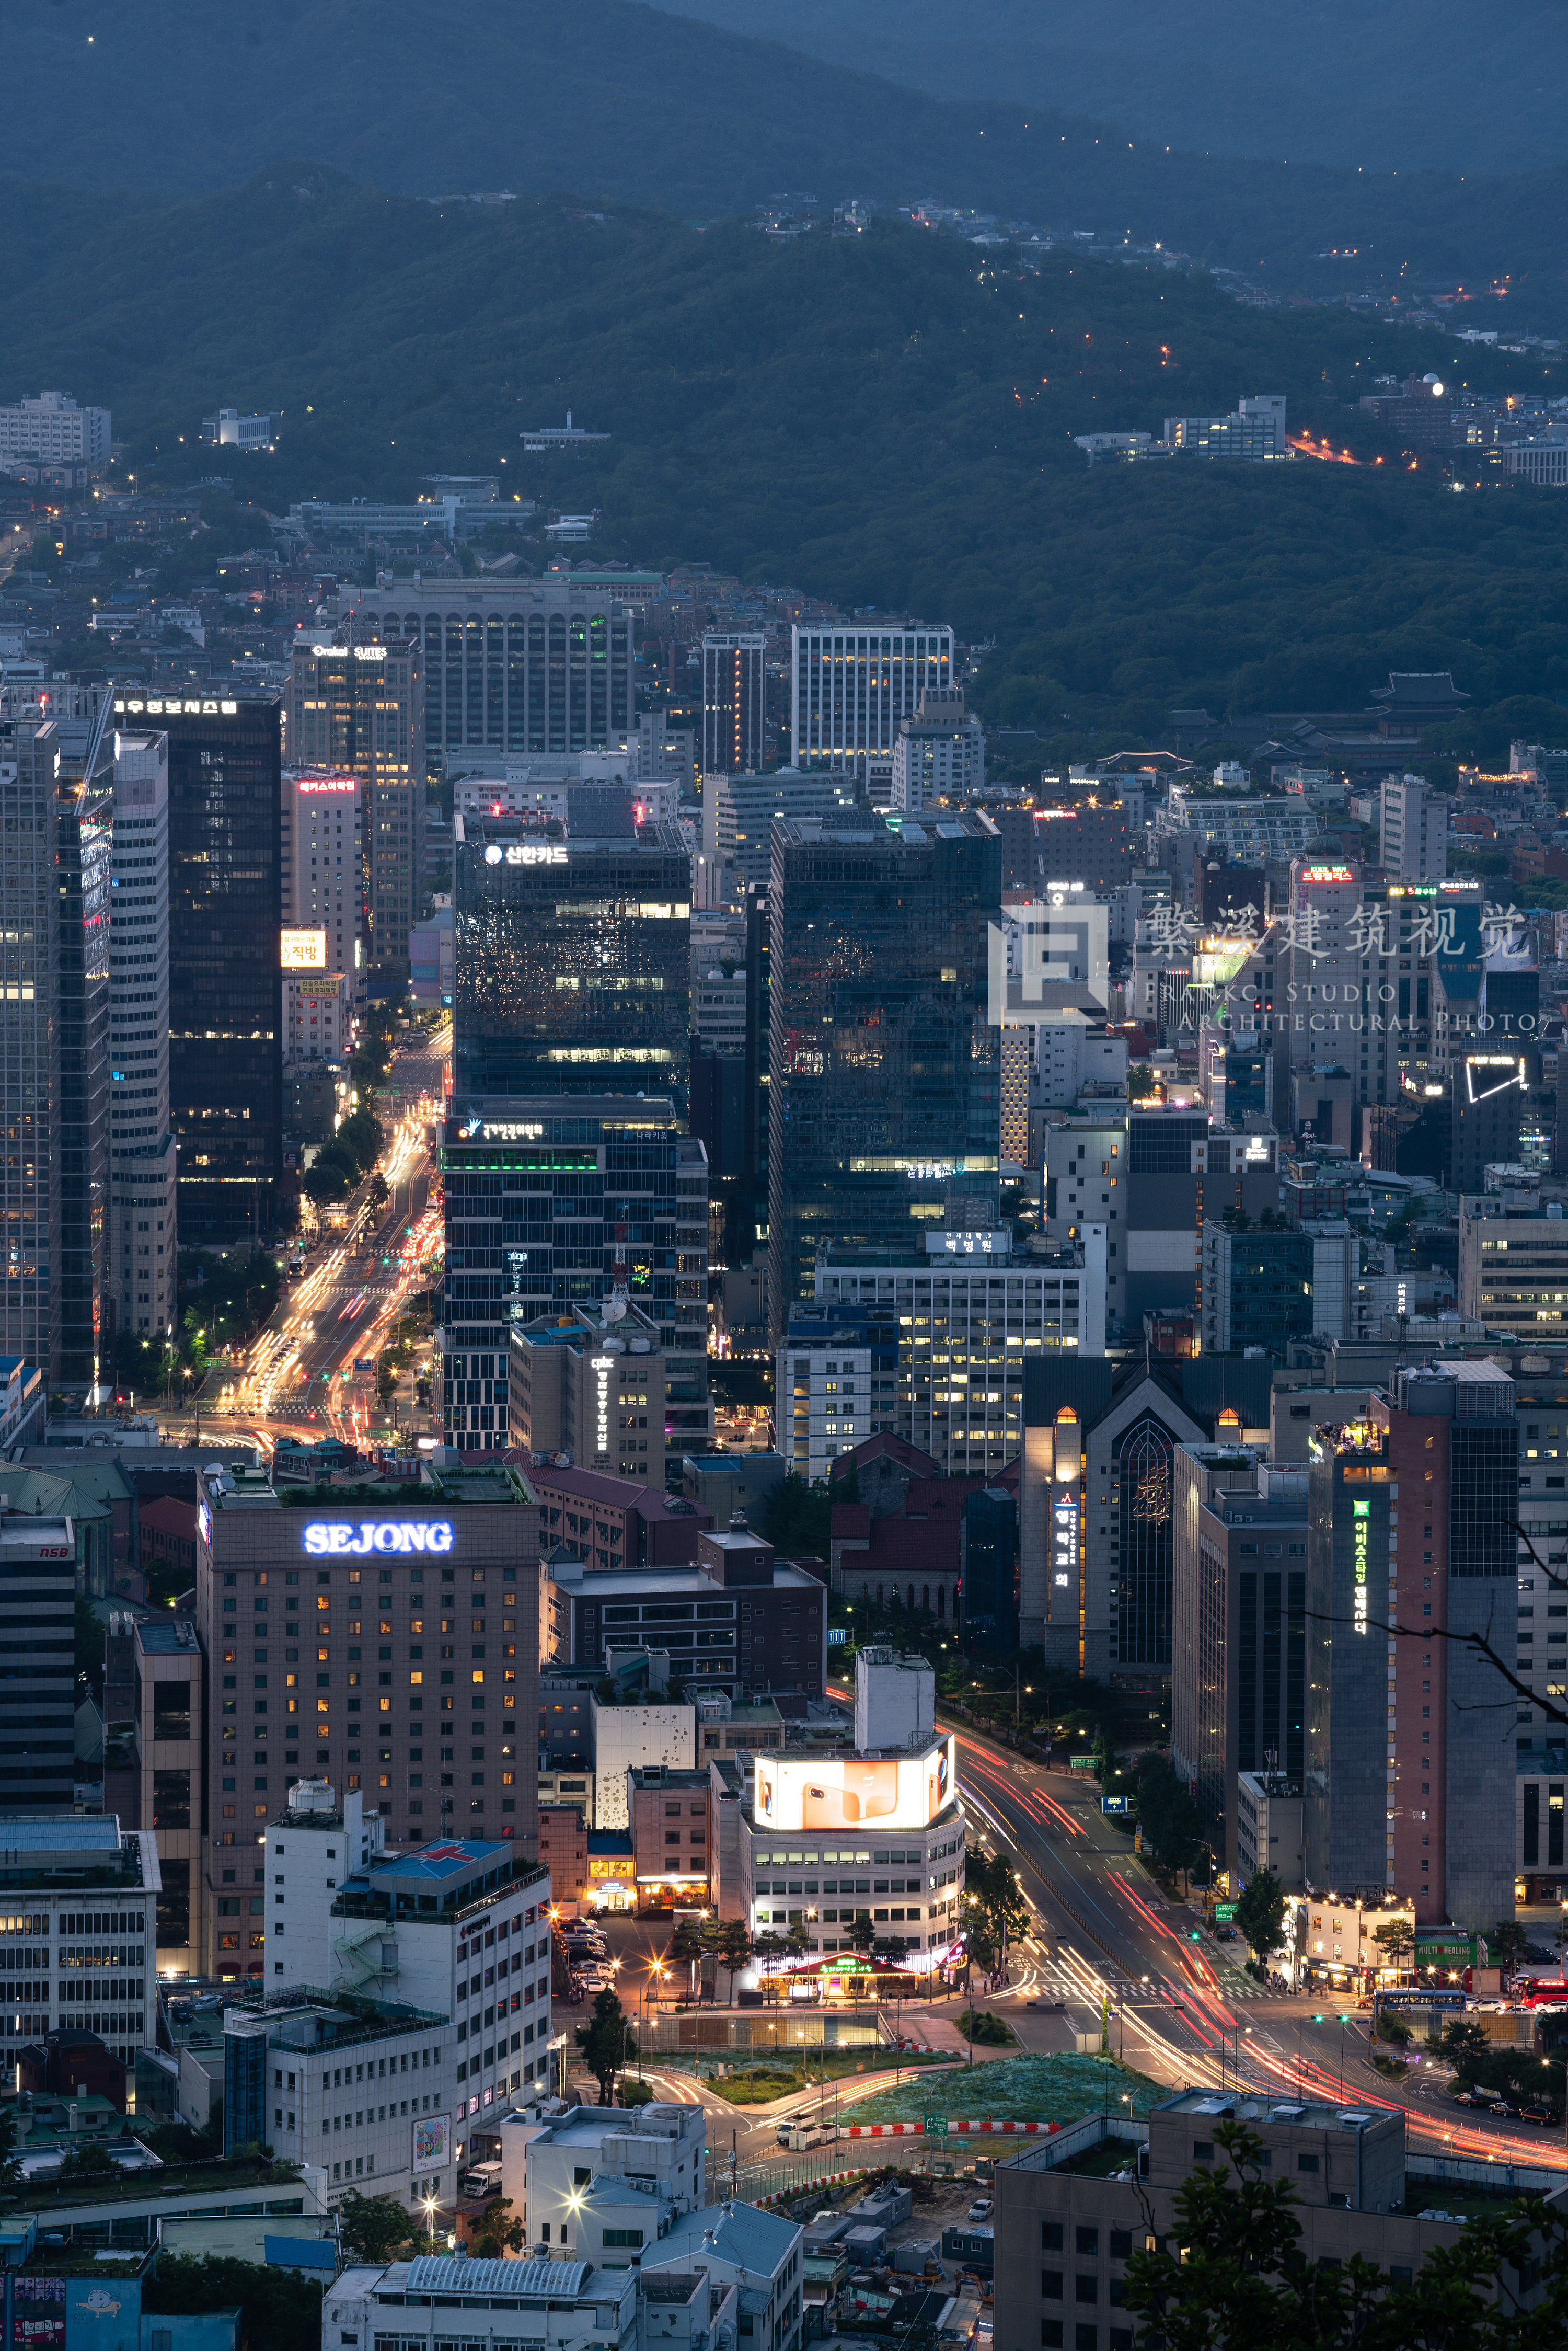 首尔旅游图片,首尔自助游图片,首尔旅游景点照片 - 蚂蜂窝图库 - 蚂蜂窝